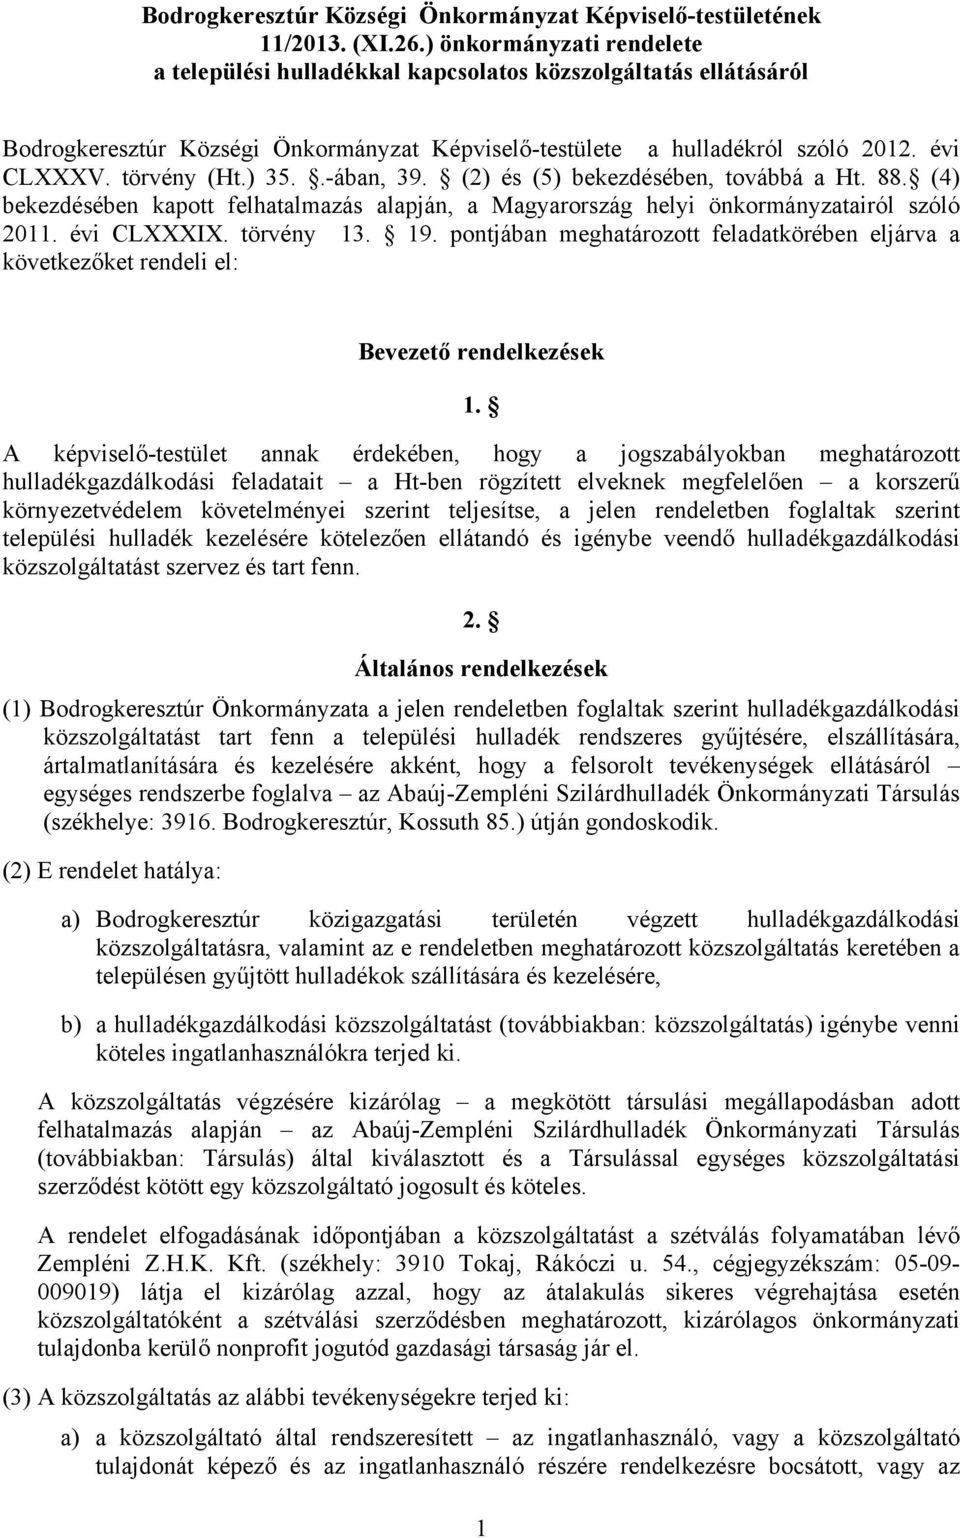 ) 35..-ában, 39. (2) és (5) bekezdésében, továbbá a Ht. 88. (4) bekezdésében kapott felhatalmazás alapján, a Magyarország helyi önkormányzatairól szóló 2011. évi CLXXXIX. törvény 13. 19.